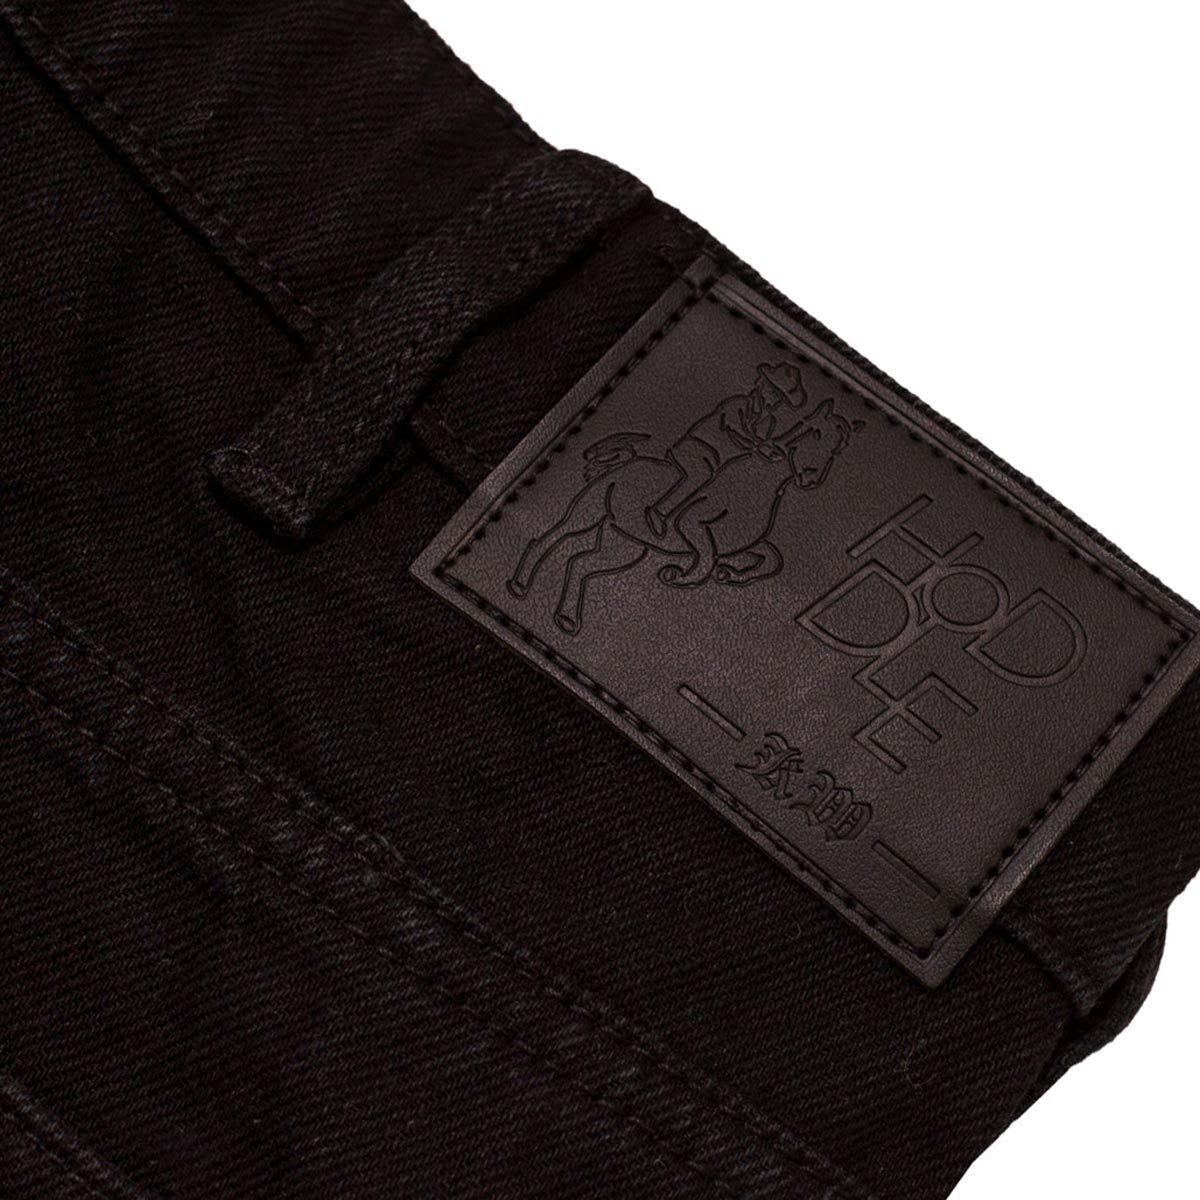 Hoddle 16oz Denim Ranger Shorts - Black image 4